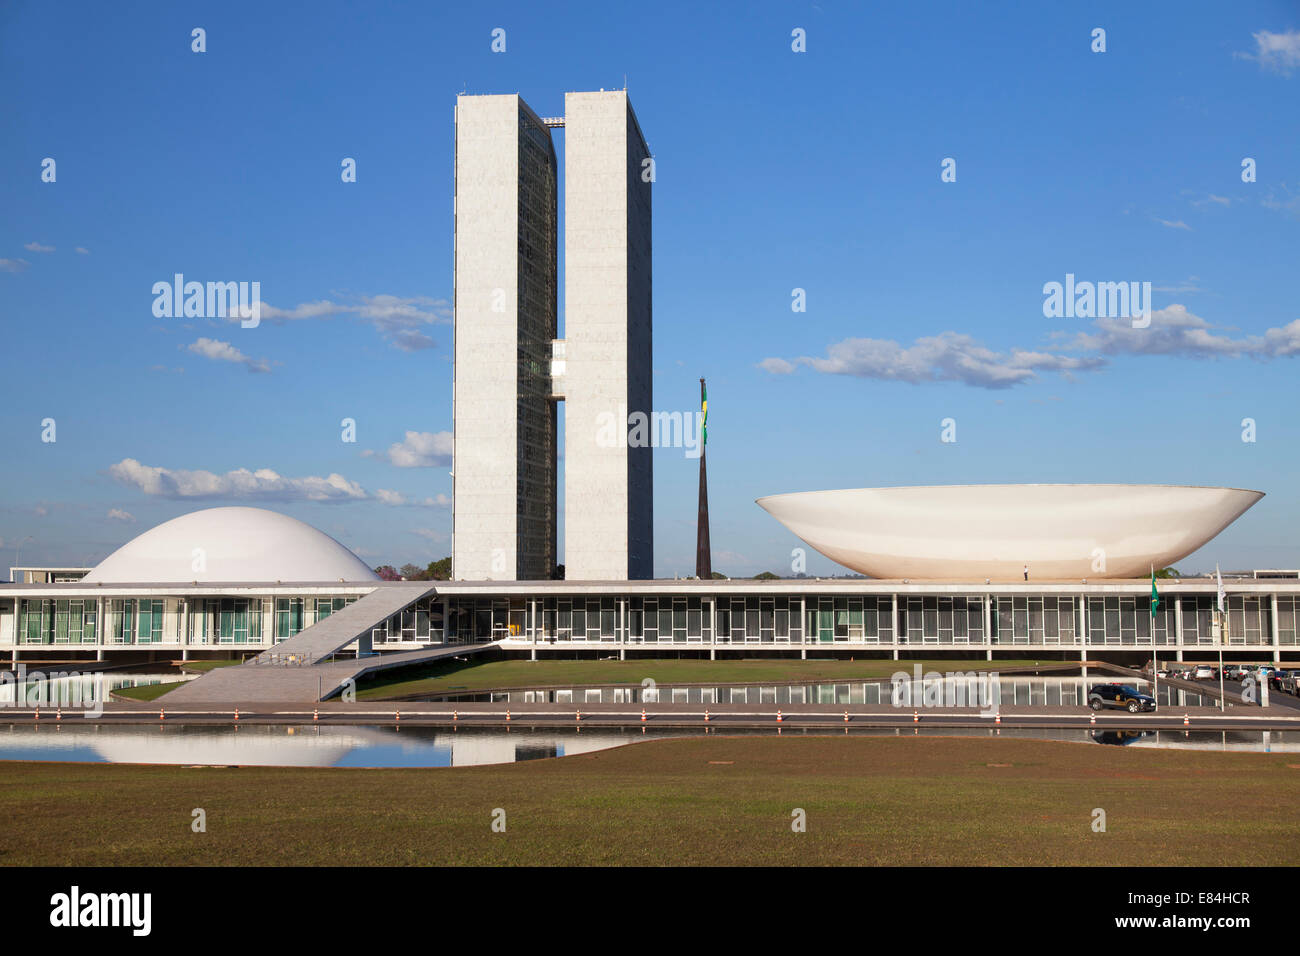 Big Tower - Instalação da bandeira do Brasil na maior torre da América  Latina. 